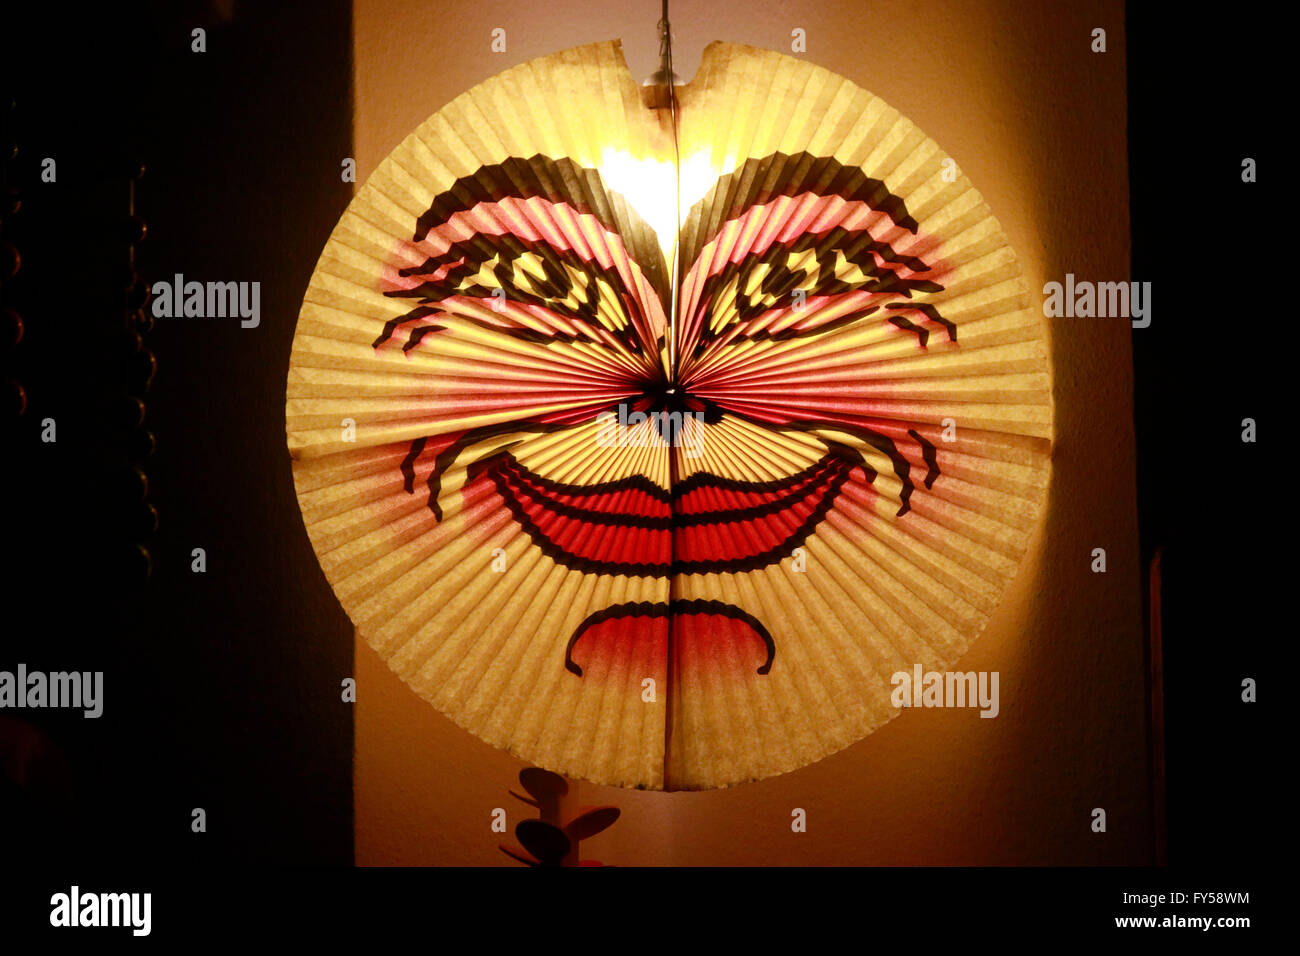 Lampe mit lachendem Gesicht, Berlin. Stock Photo